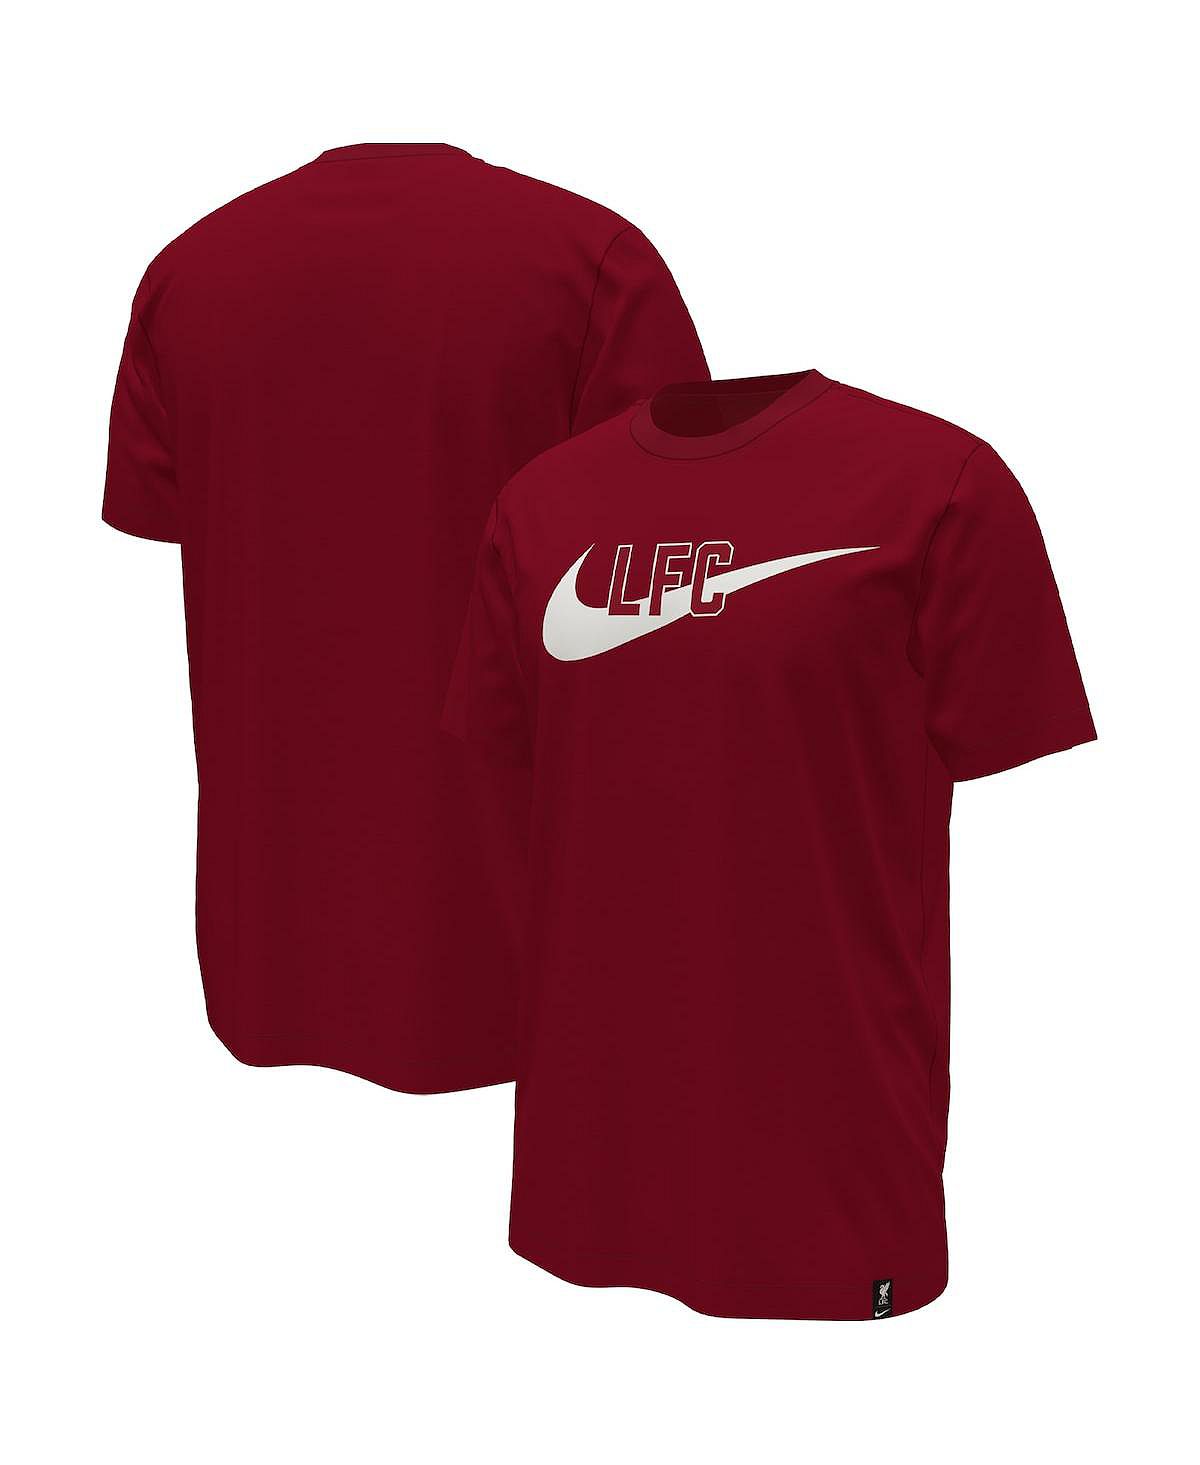 цена Мужская красная футболка с галочкой Liverpool Nike